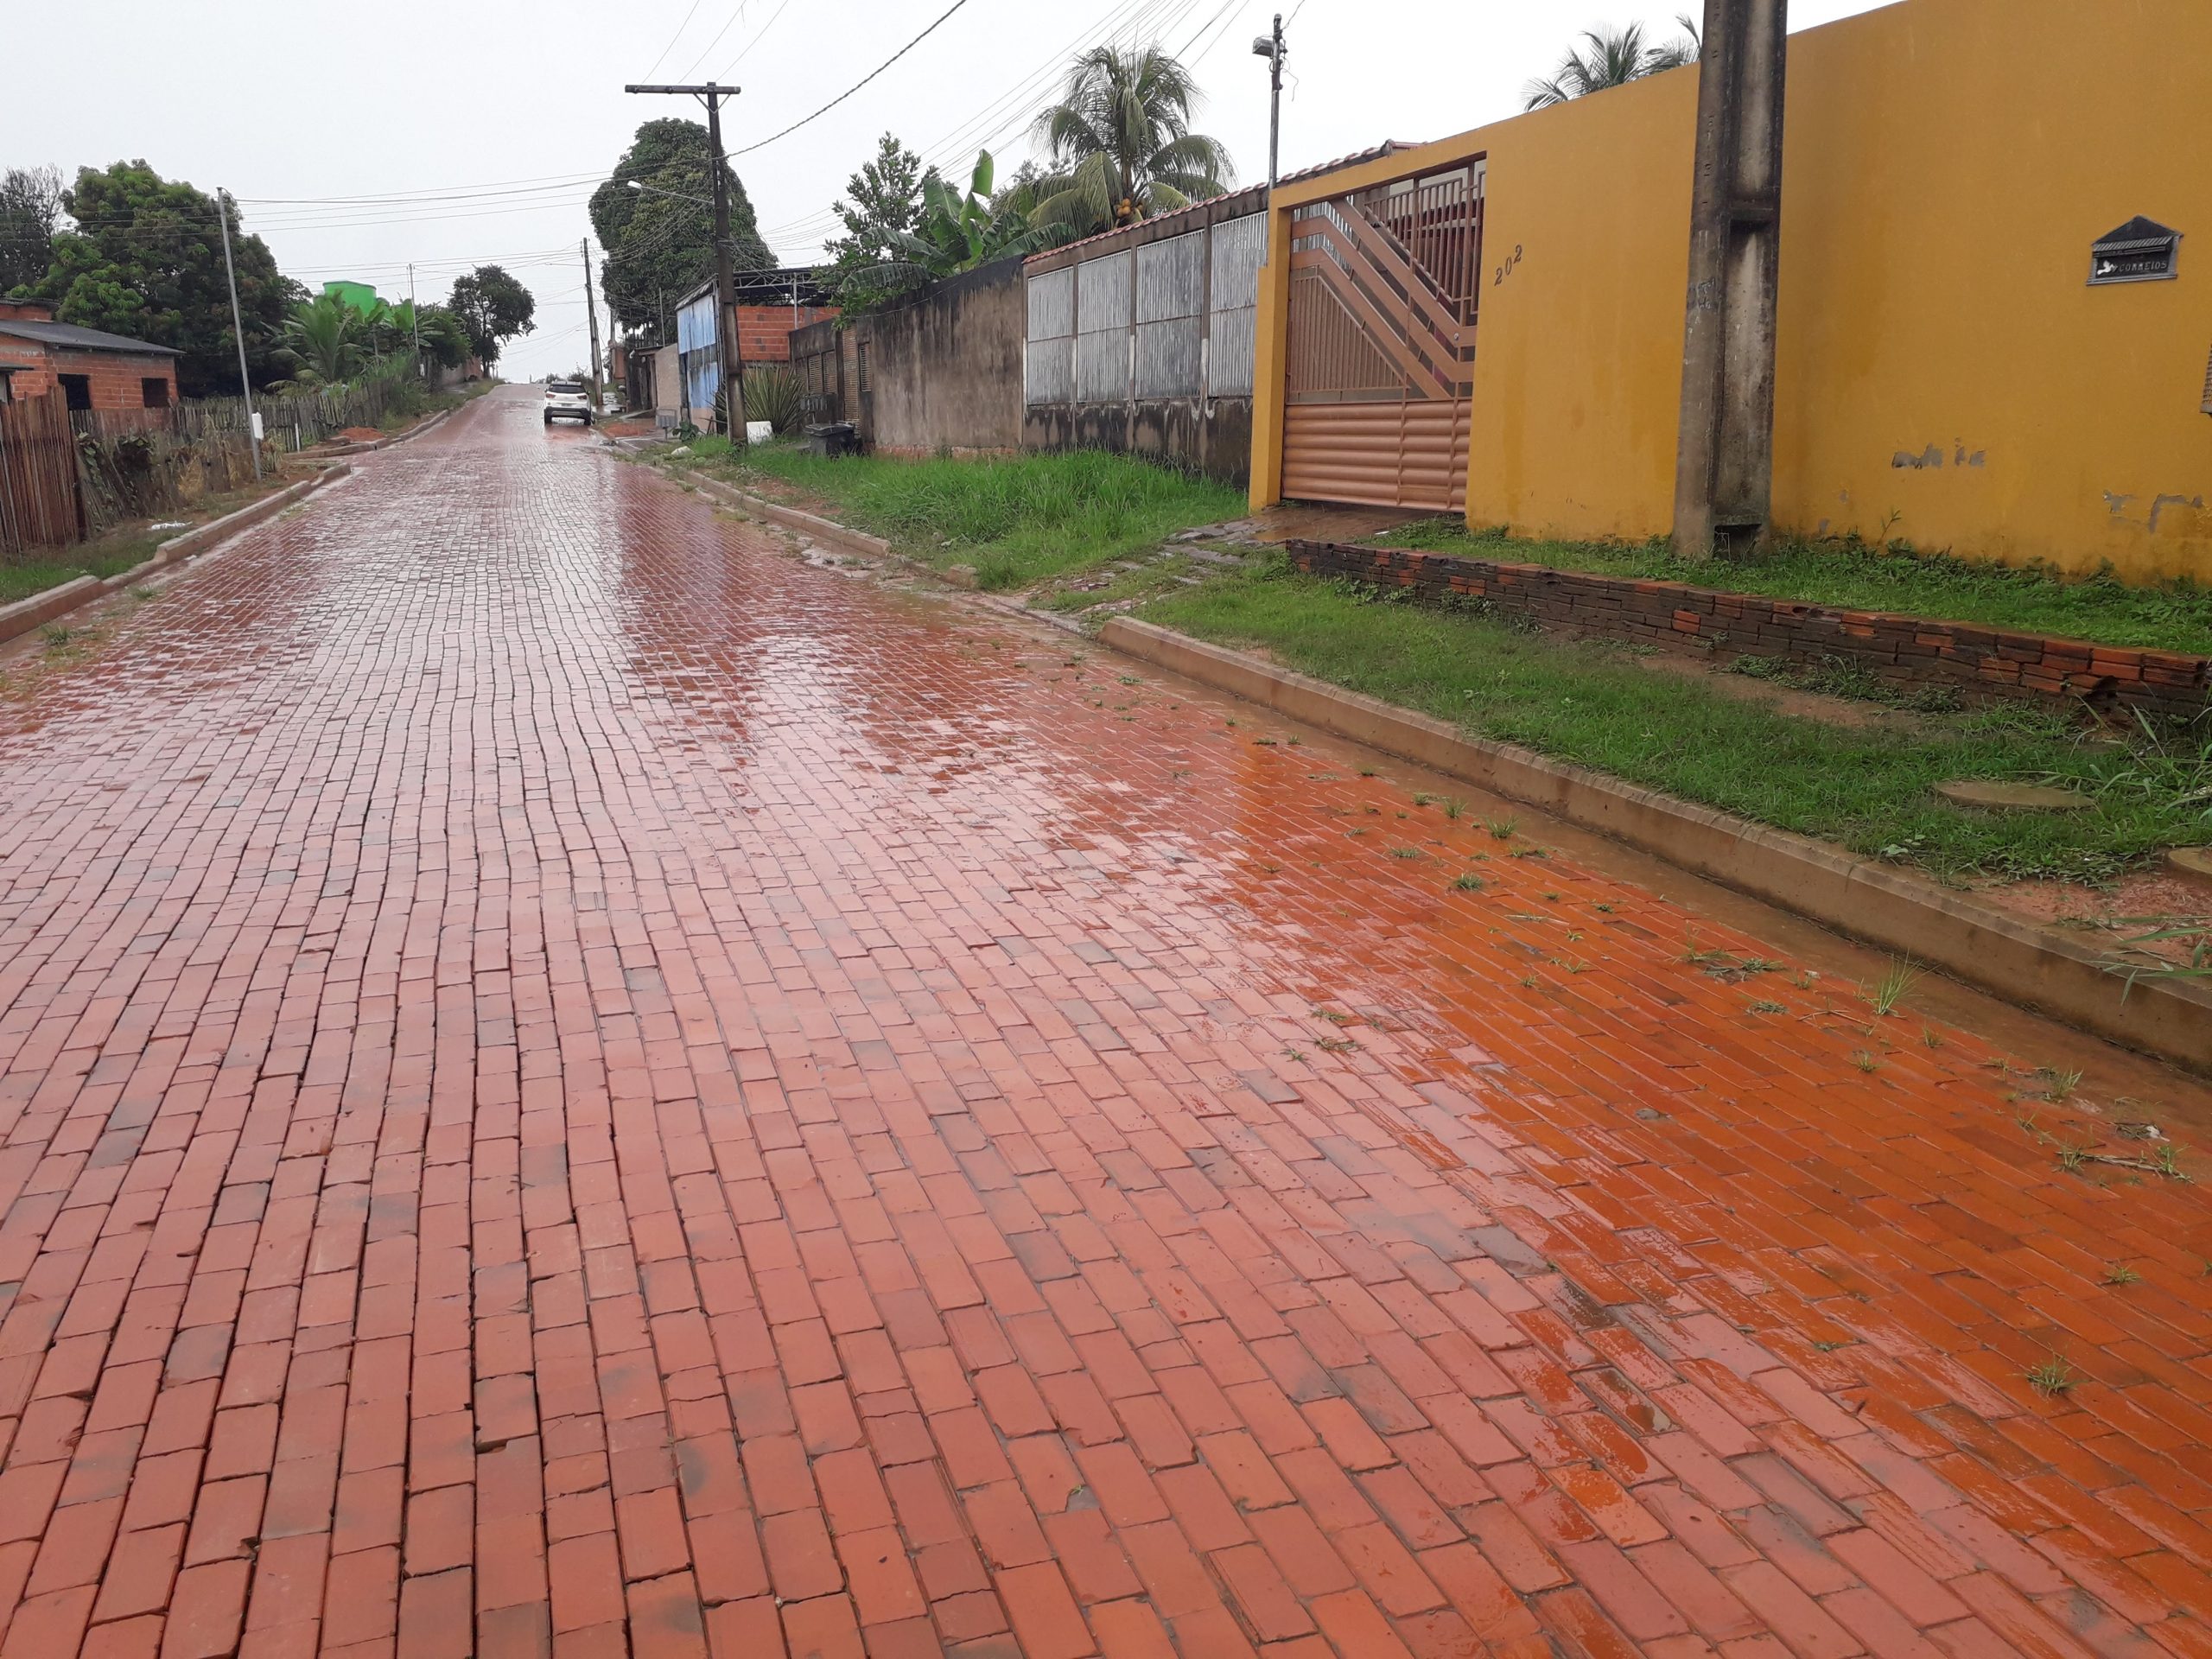 Obras de infraestrutura e saneamento mudam a paisagem em bairro na região do Calafate